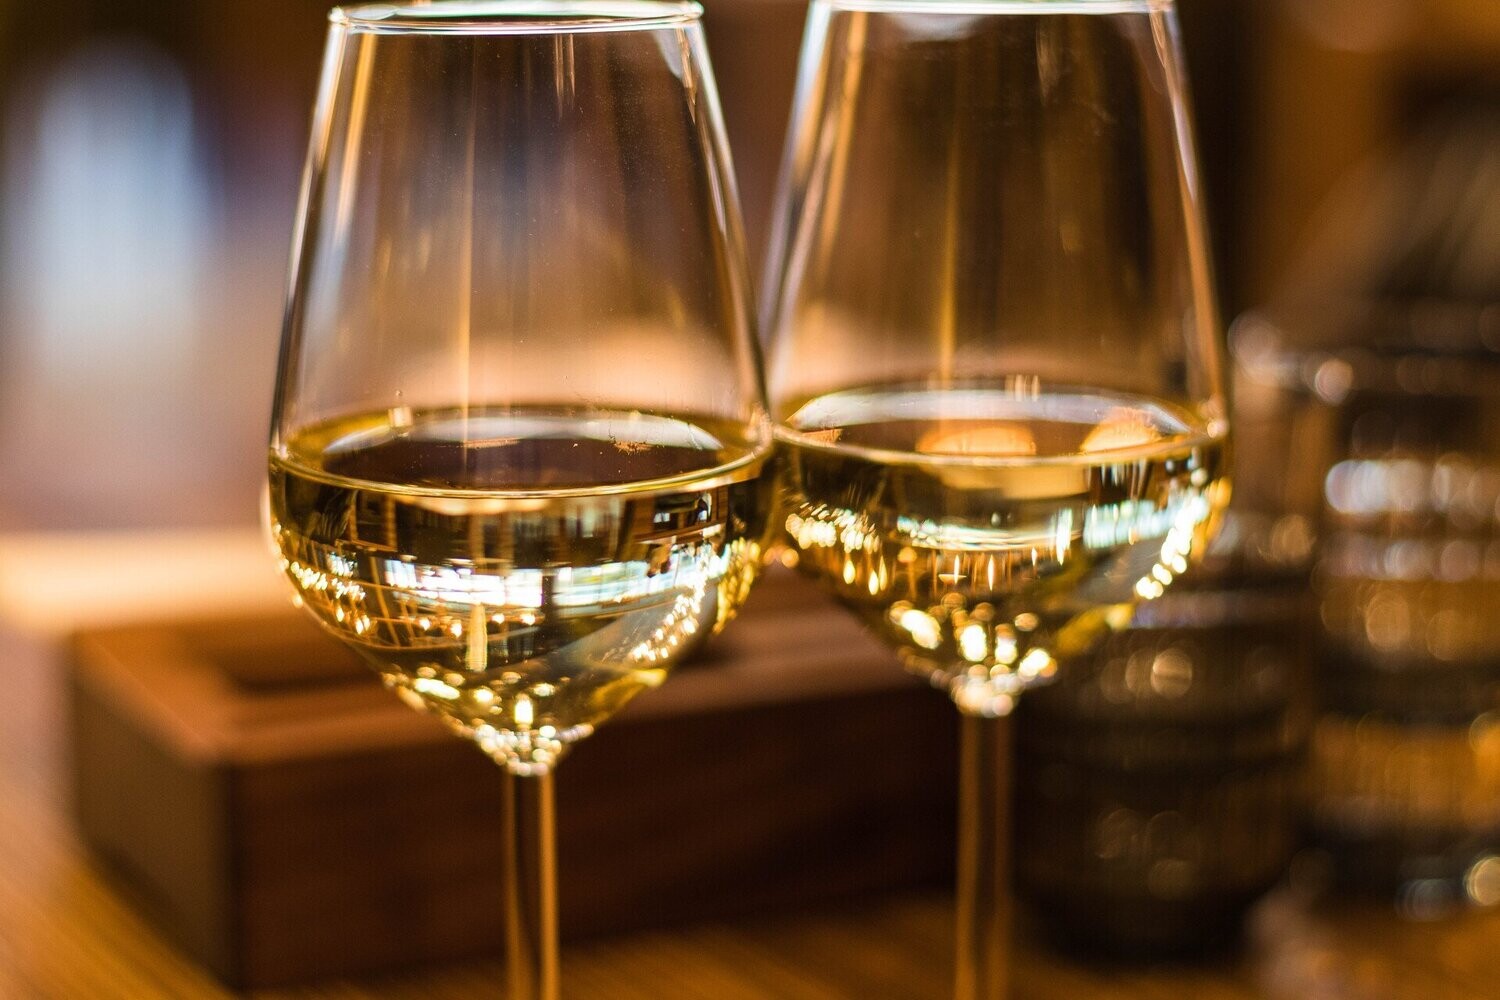 PRE-ORDER: WHITE WINE - La Deliziosa Pinot Grigio - Italy